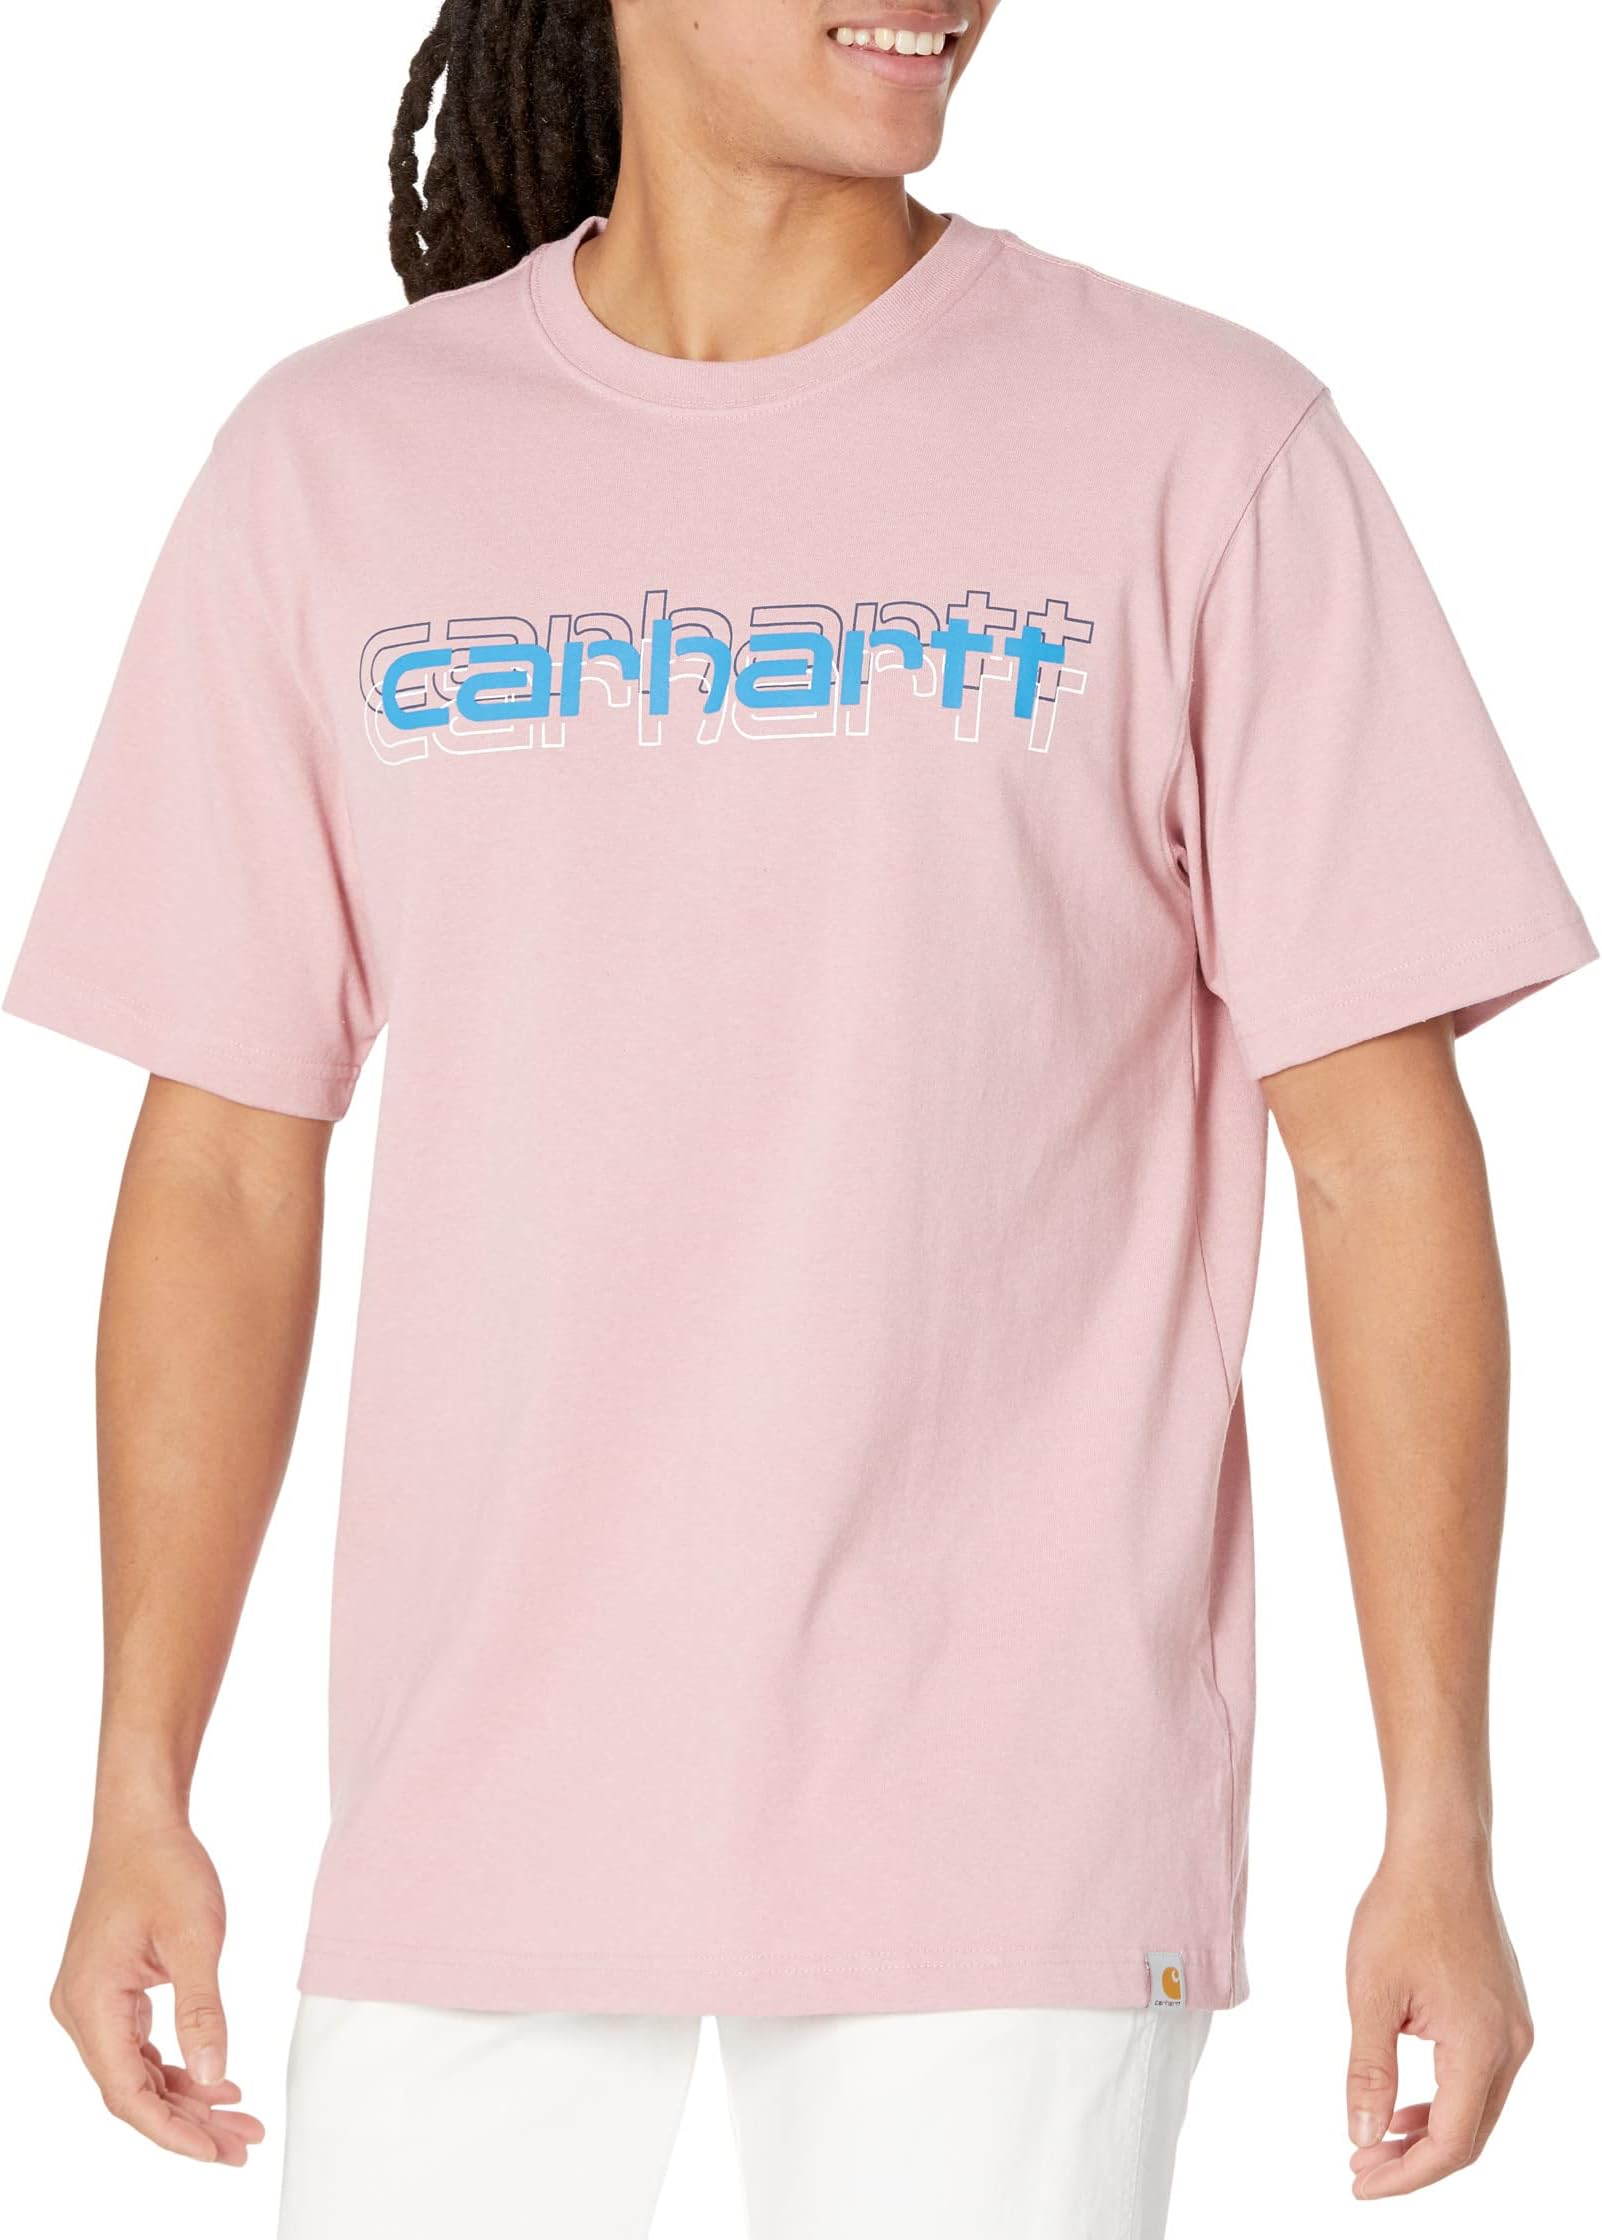 Свободная футболка тяжелого кроя с короткими рукавами и графическим логотипом Carhartt, цвет Foxglove Heather